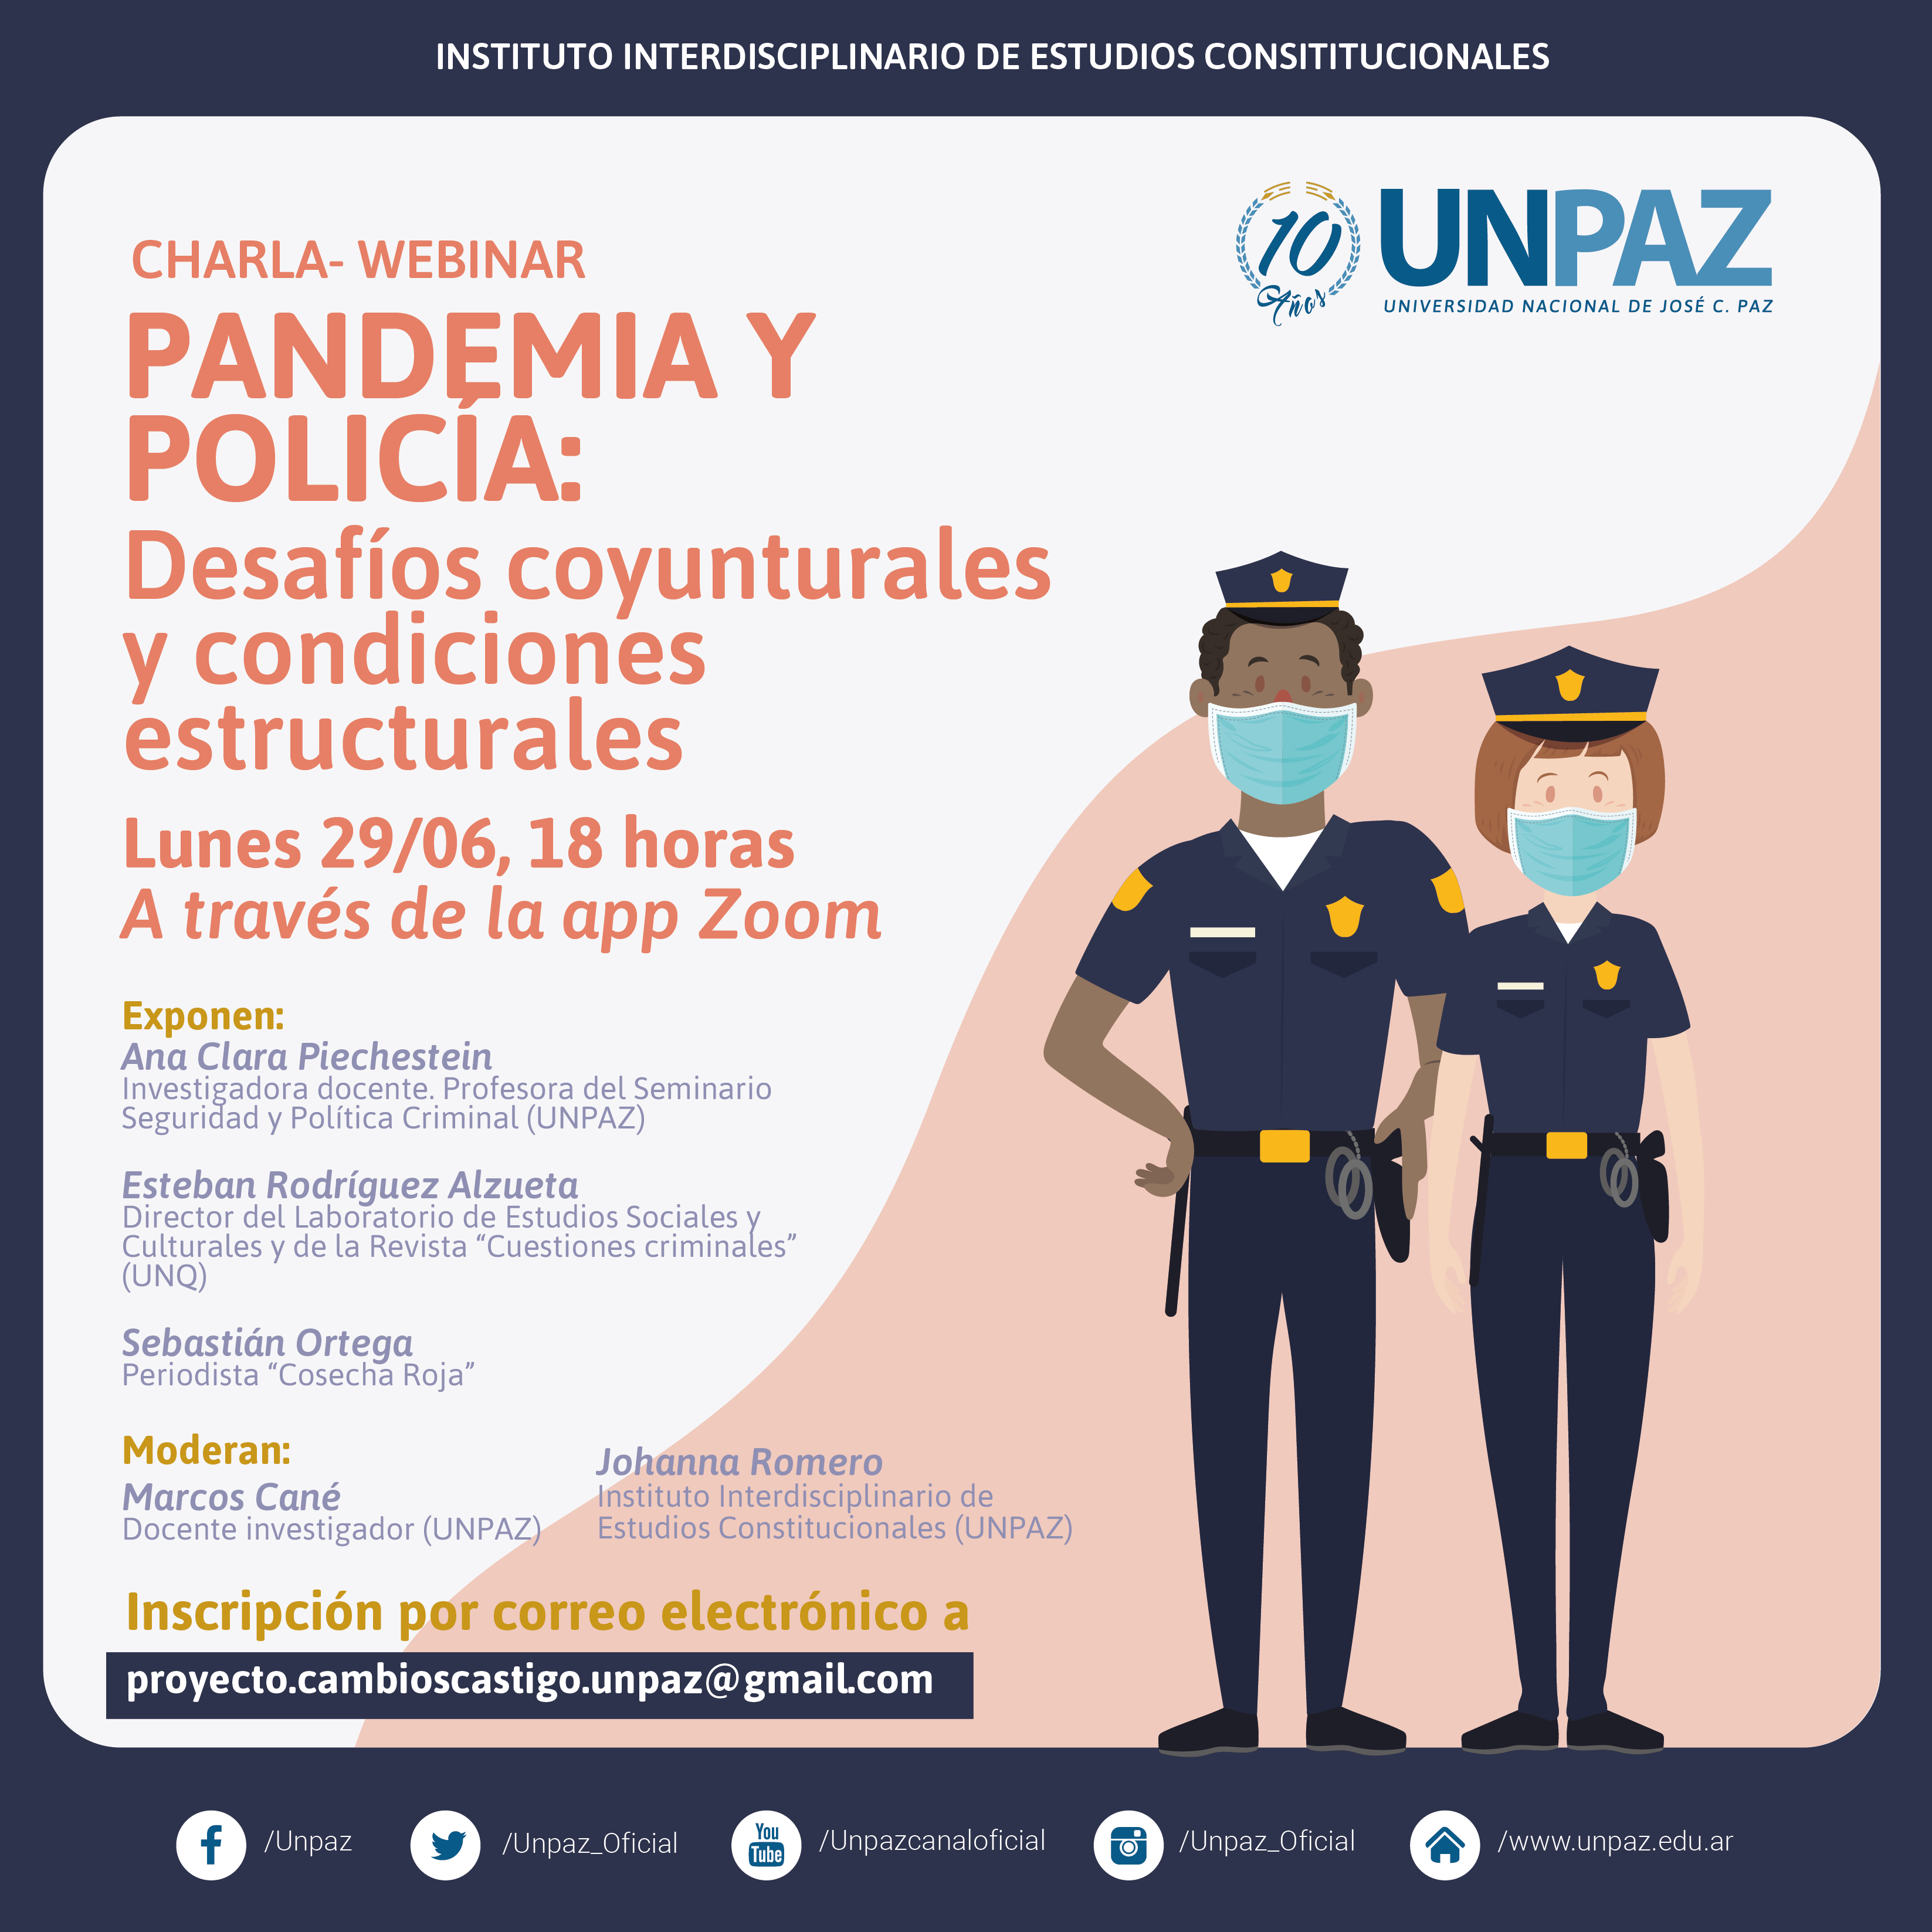 CHARLA- WEBINAR. PANDEMIA Y POLICÍA: DESAFÍOS COYUNTURALES Y CONDICIONES ESTRUCTURALES